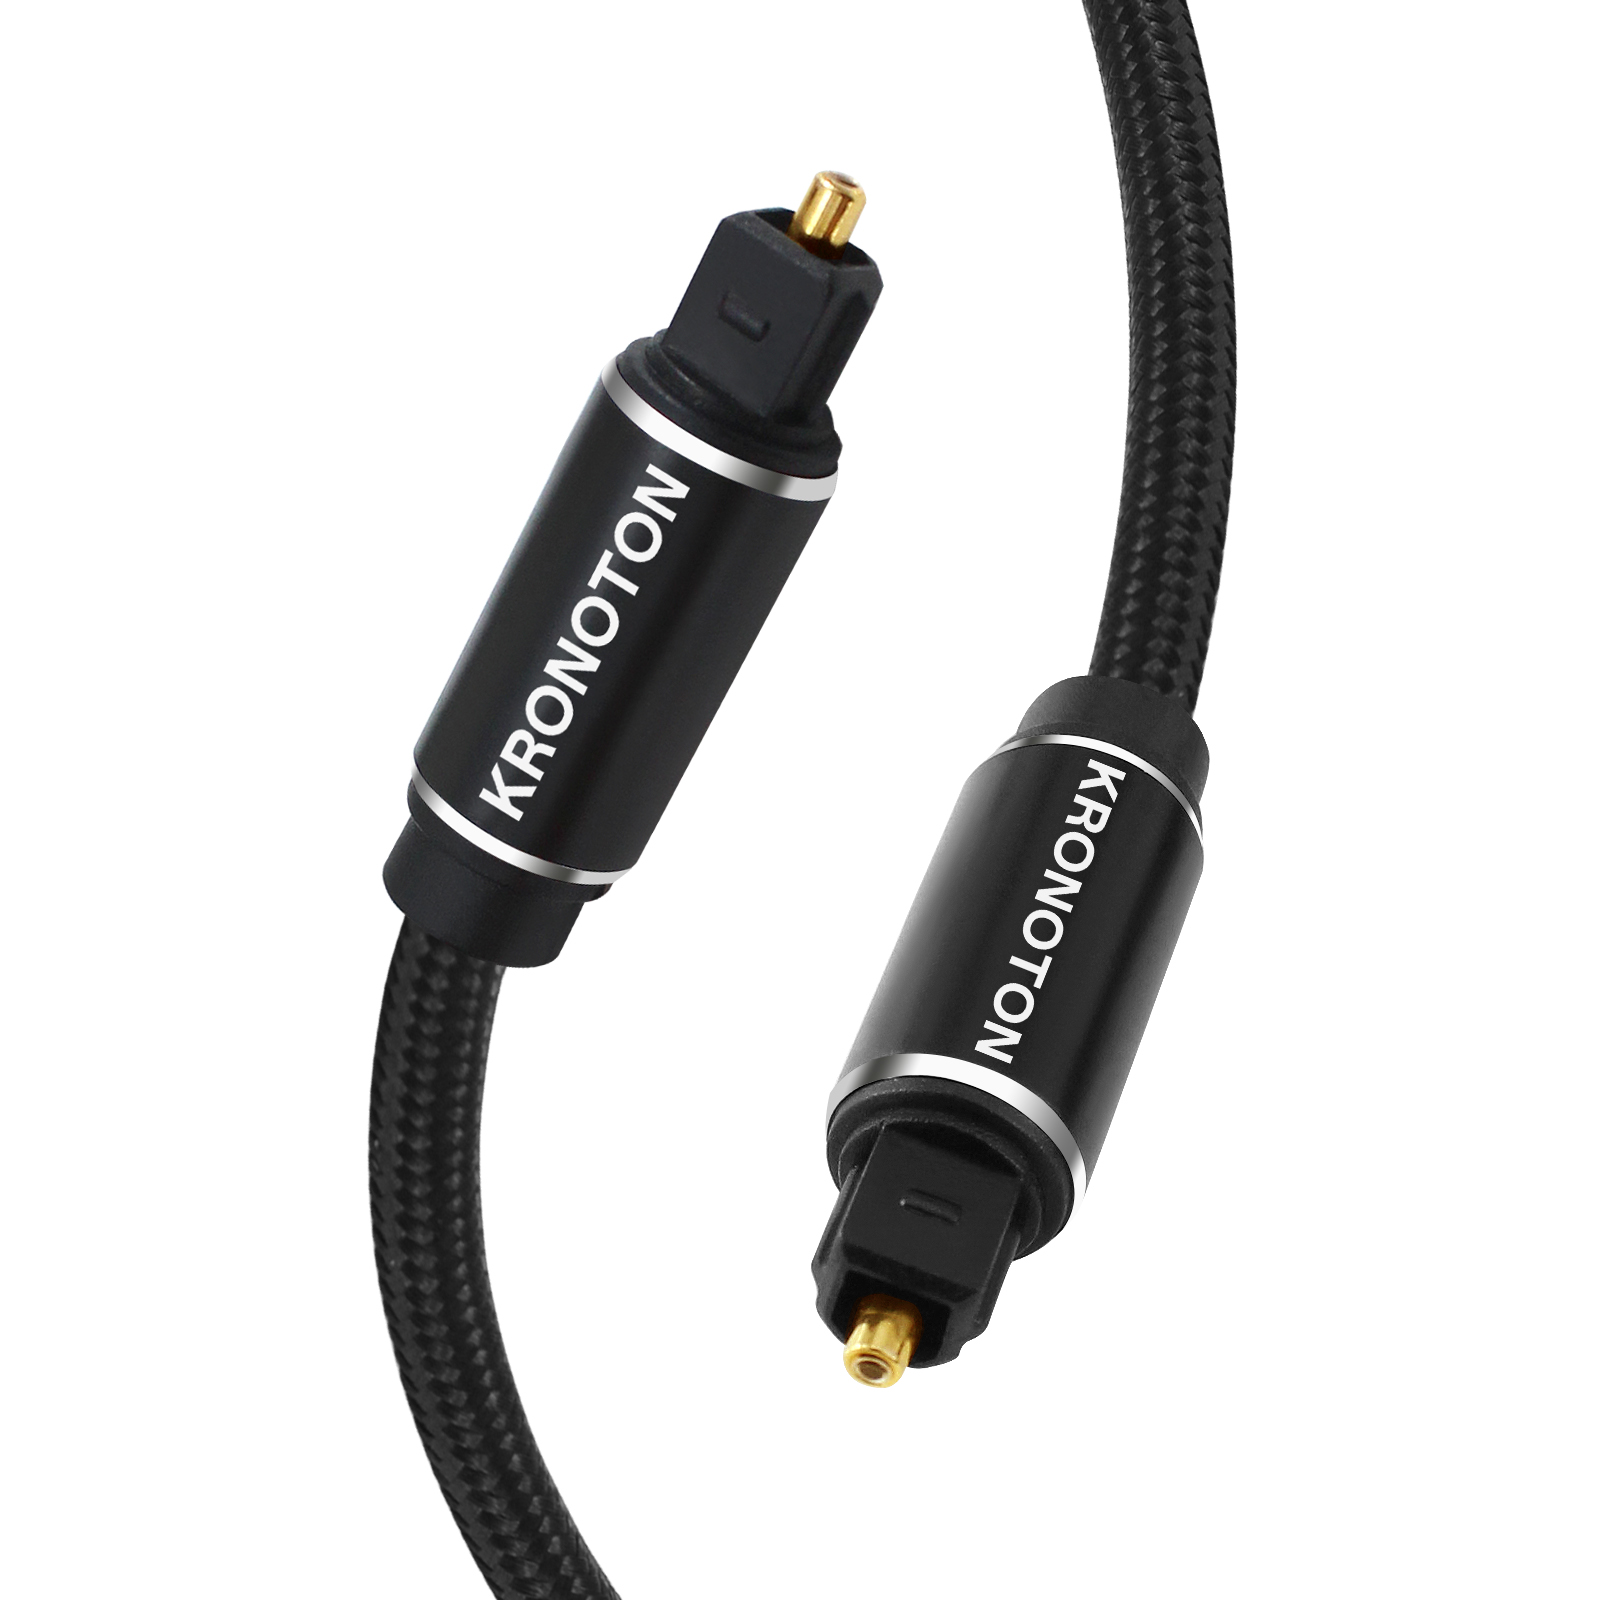 HDSX KRONOTON Premium Lichtleiter Kabel Kabel, Toslink Audio 1,5 Optical, Digital m